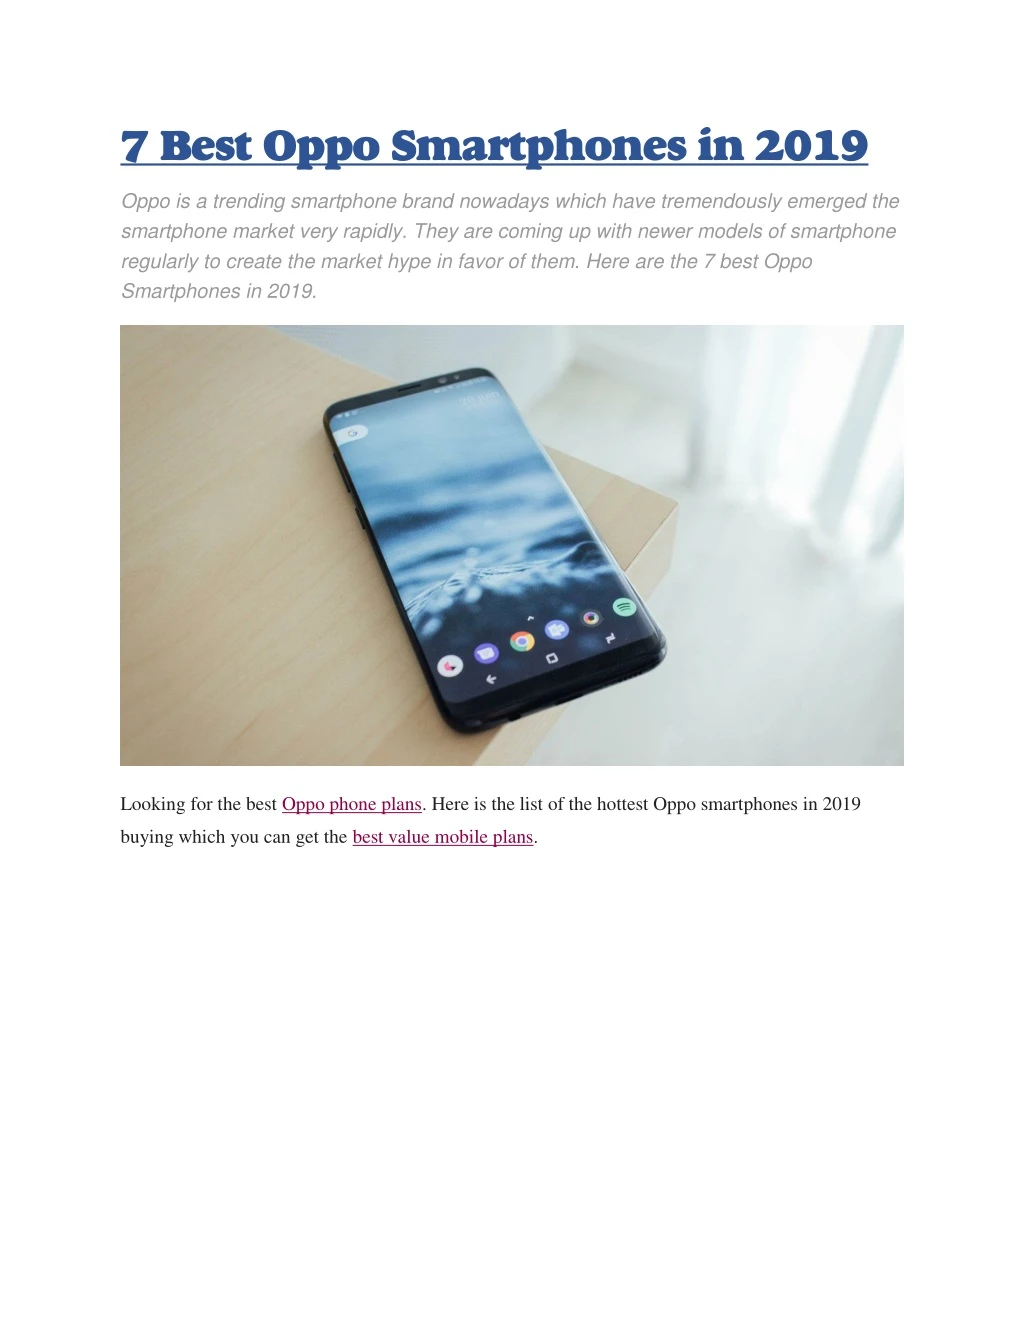 7 best oppo smartphones in 2019